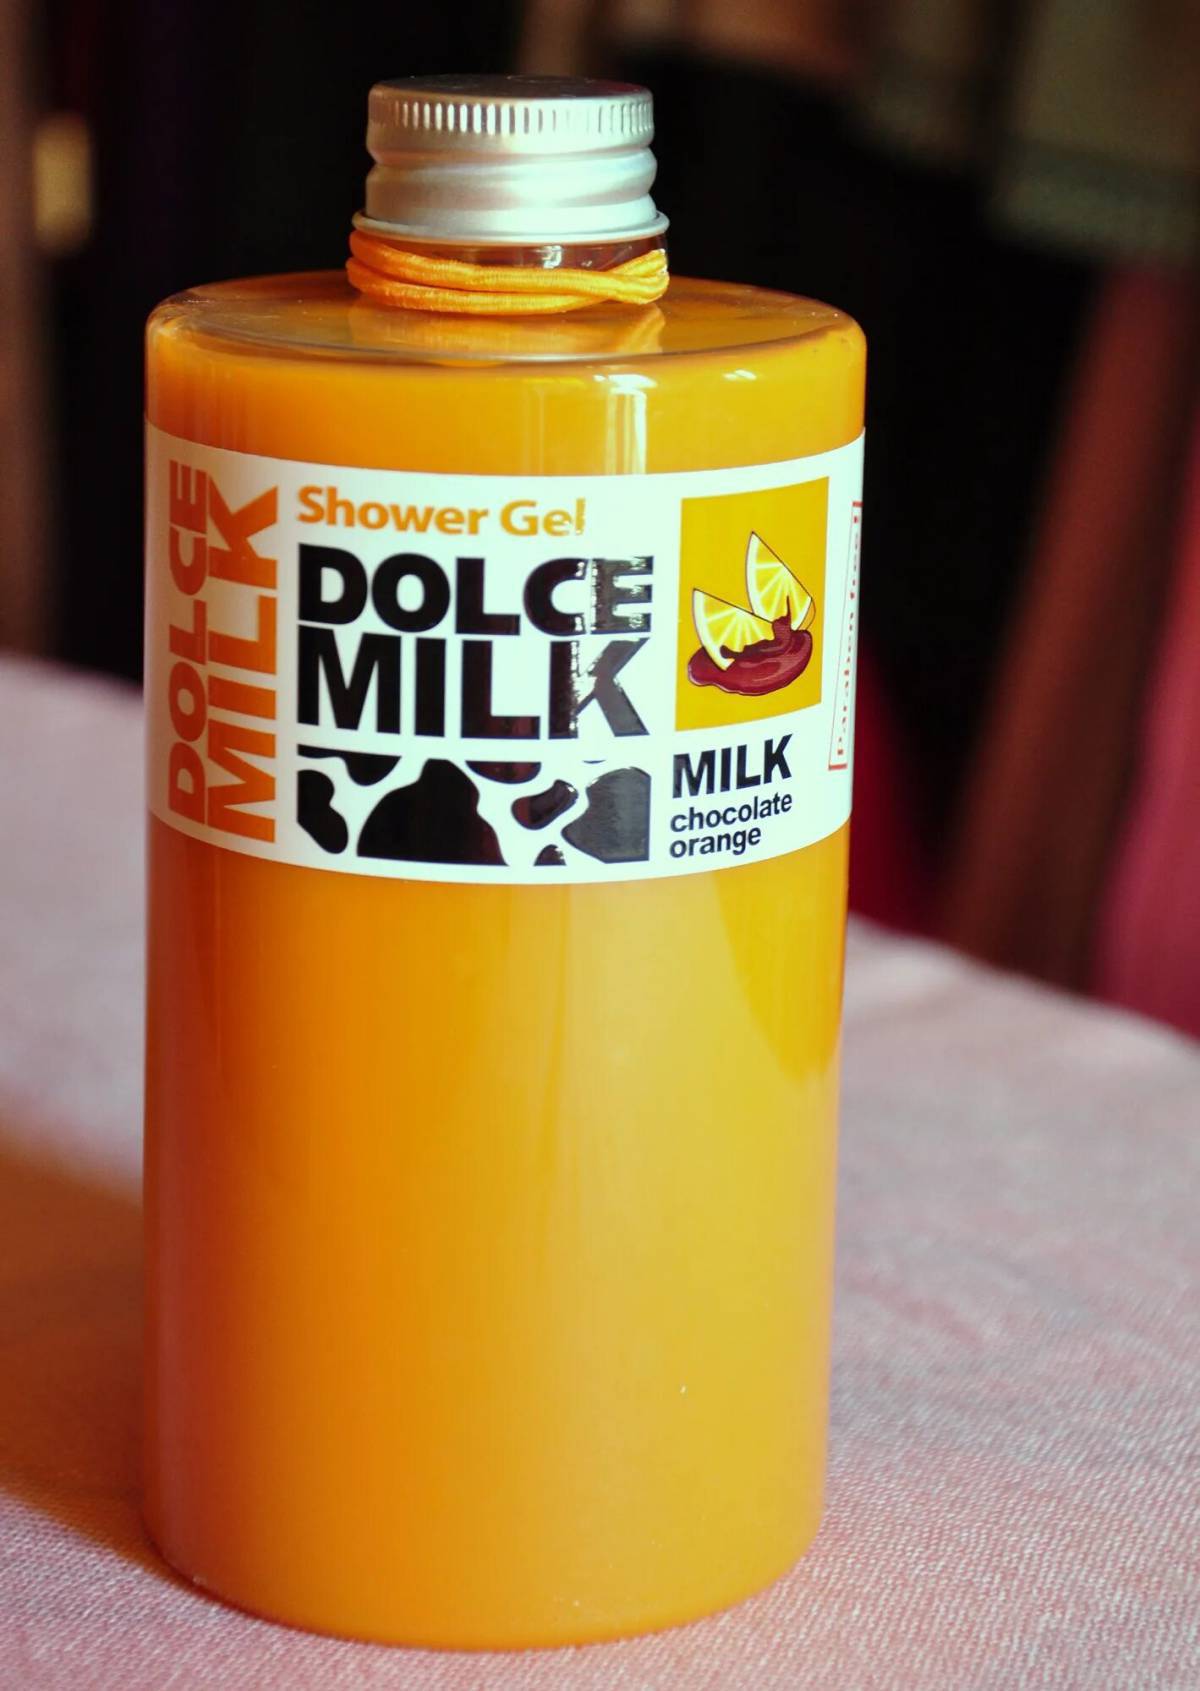 Dolce milk #23